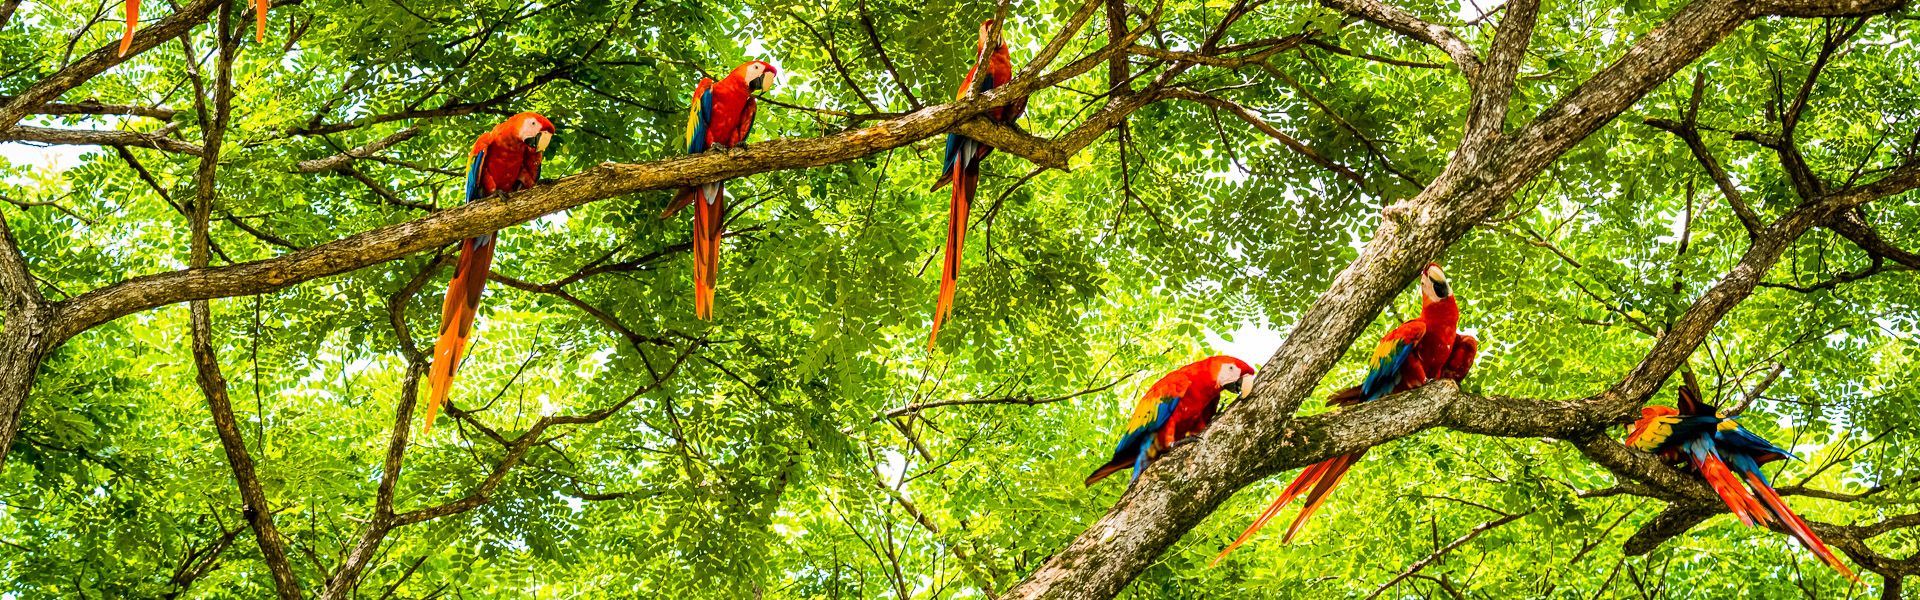 Costa Rica Natur Erlebnis pur.